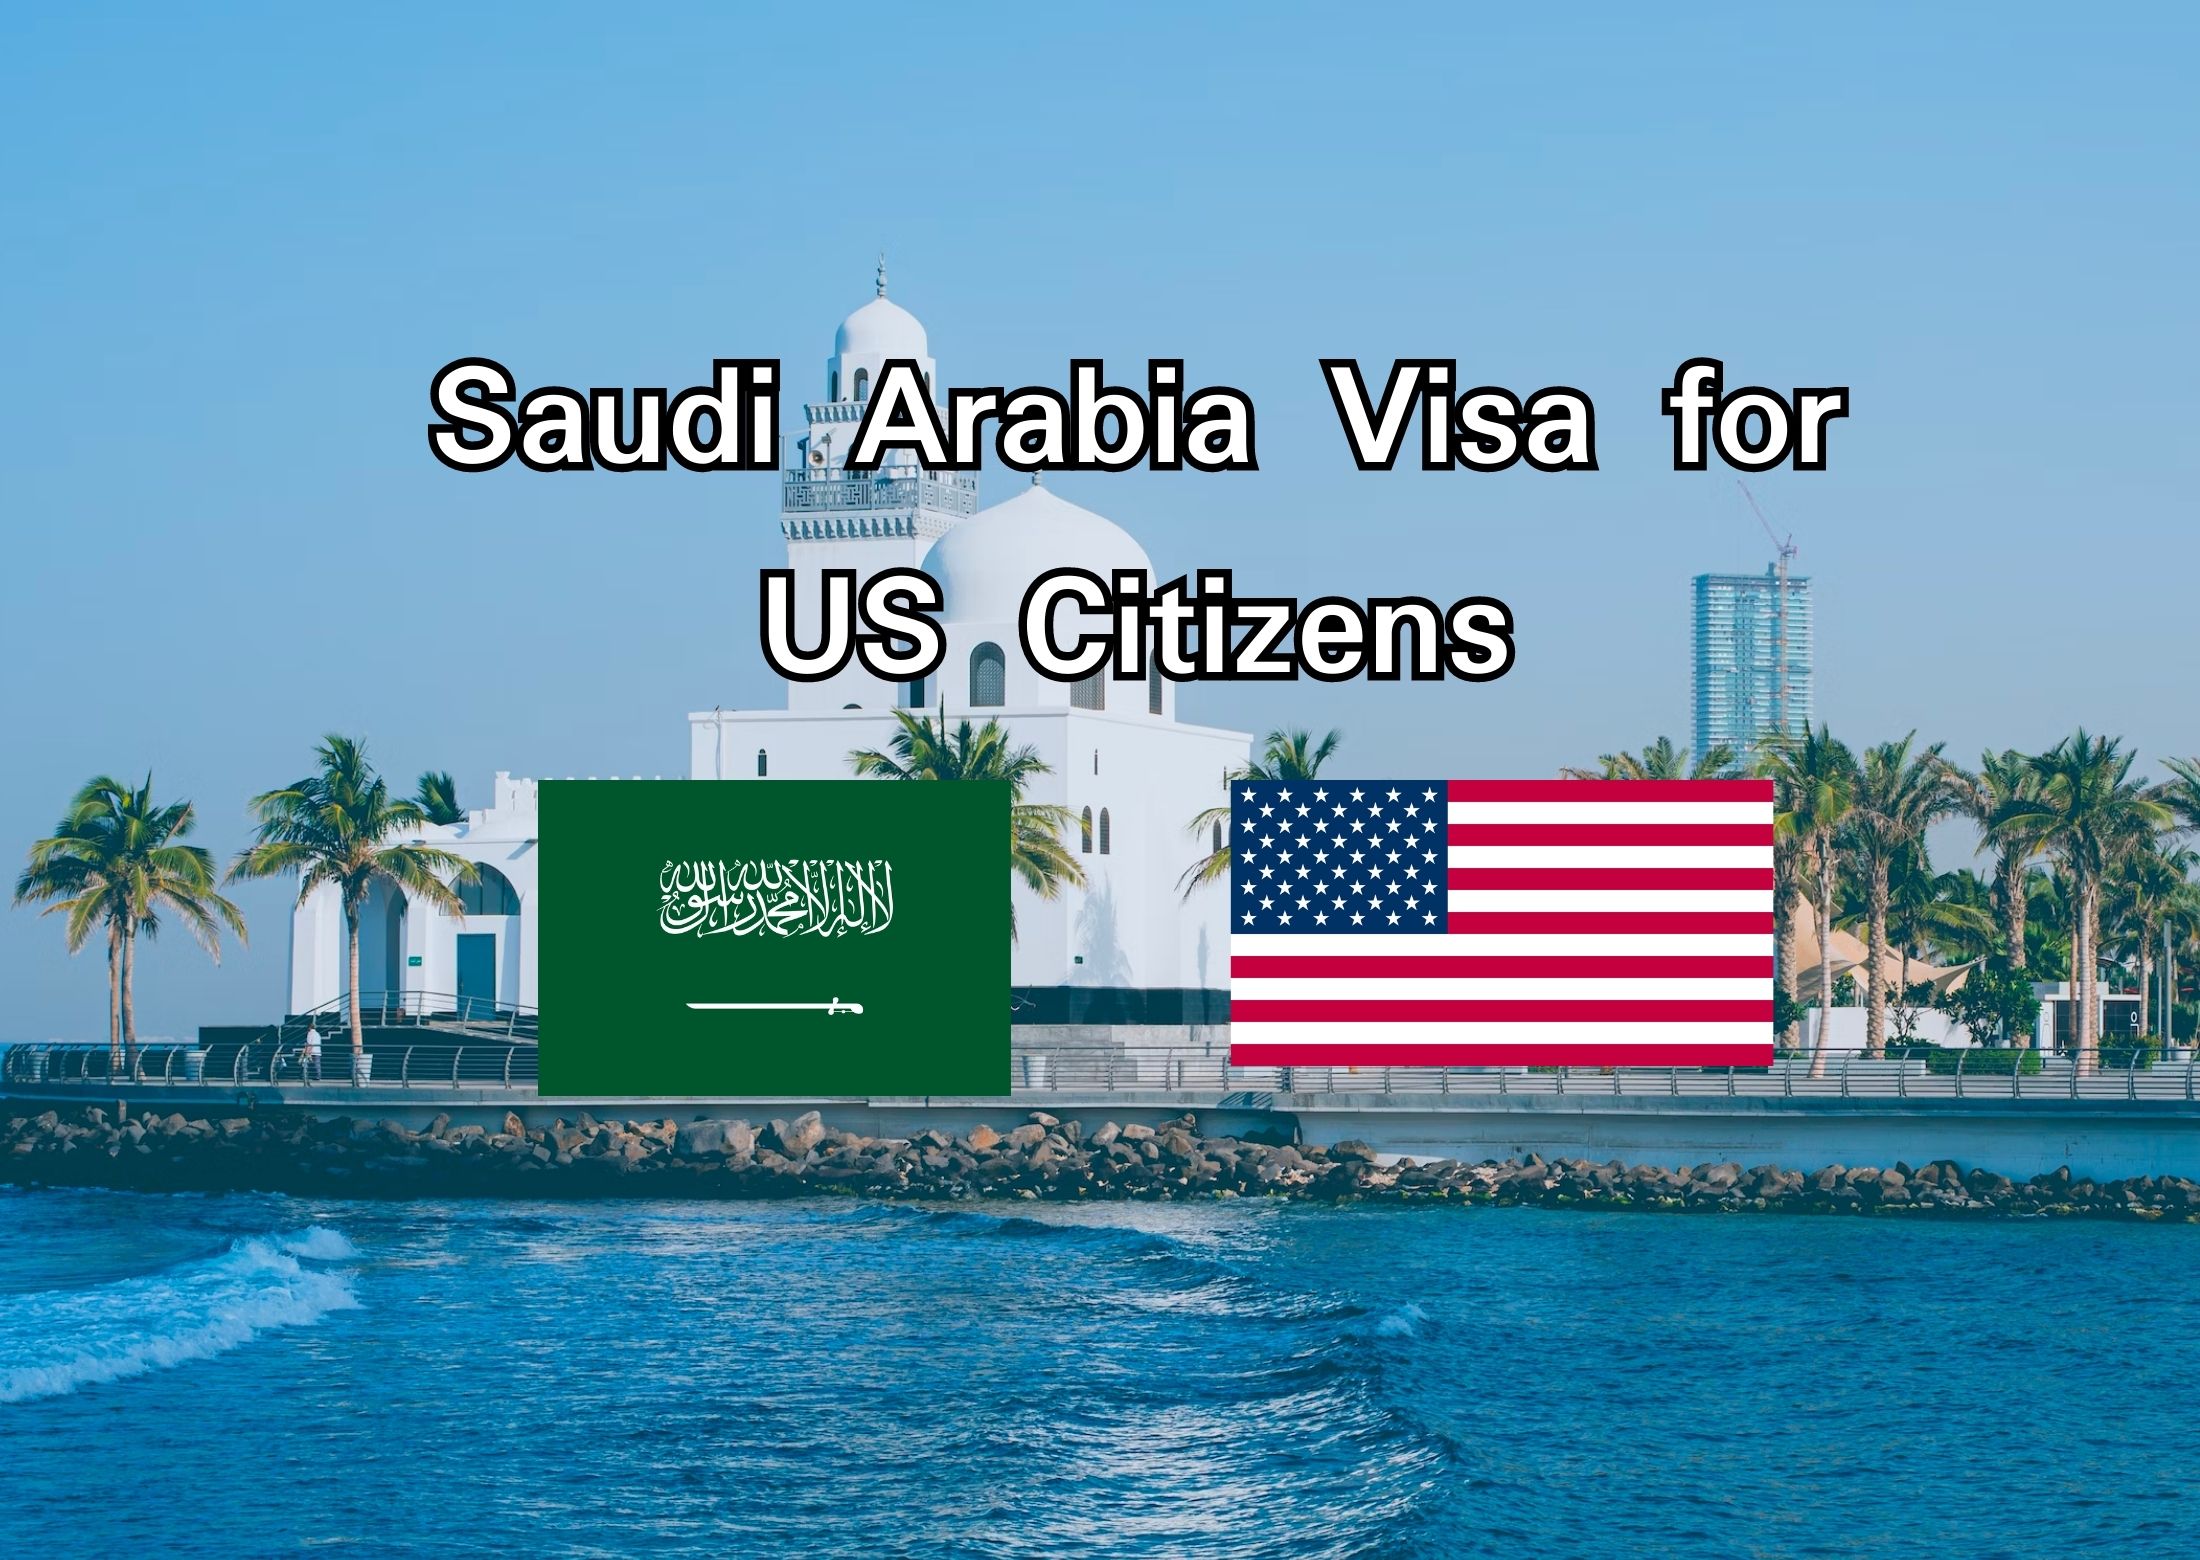 Saudi Arabia Visa for US Citizens